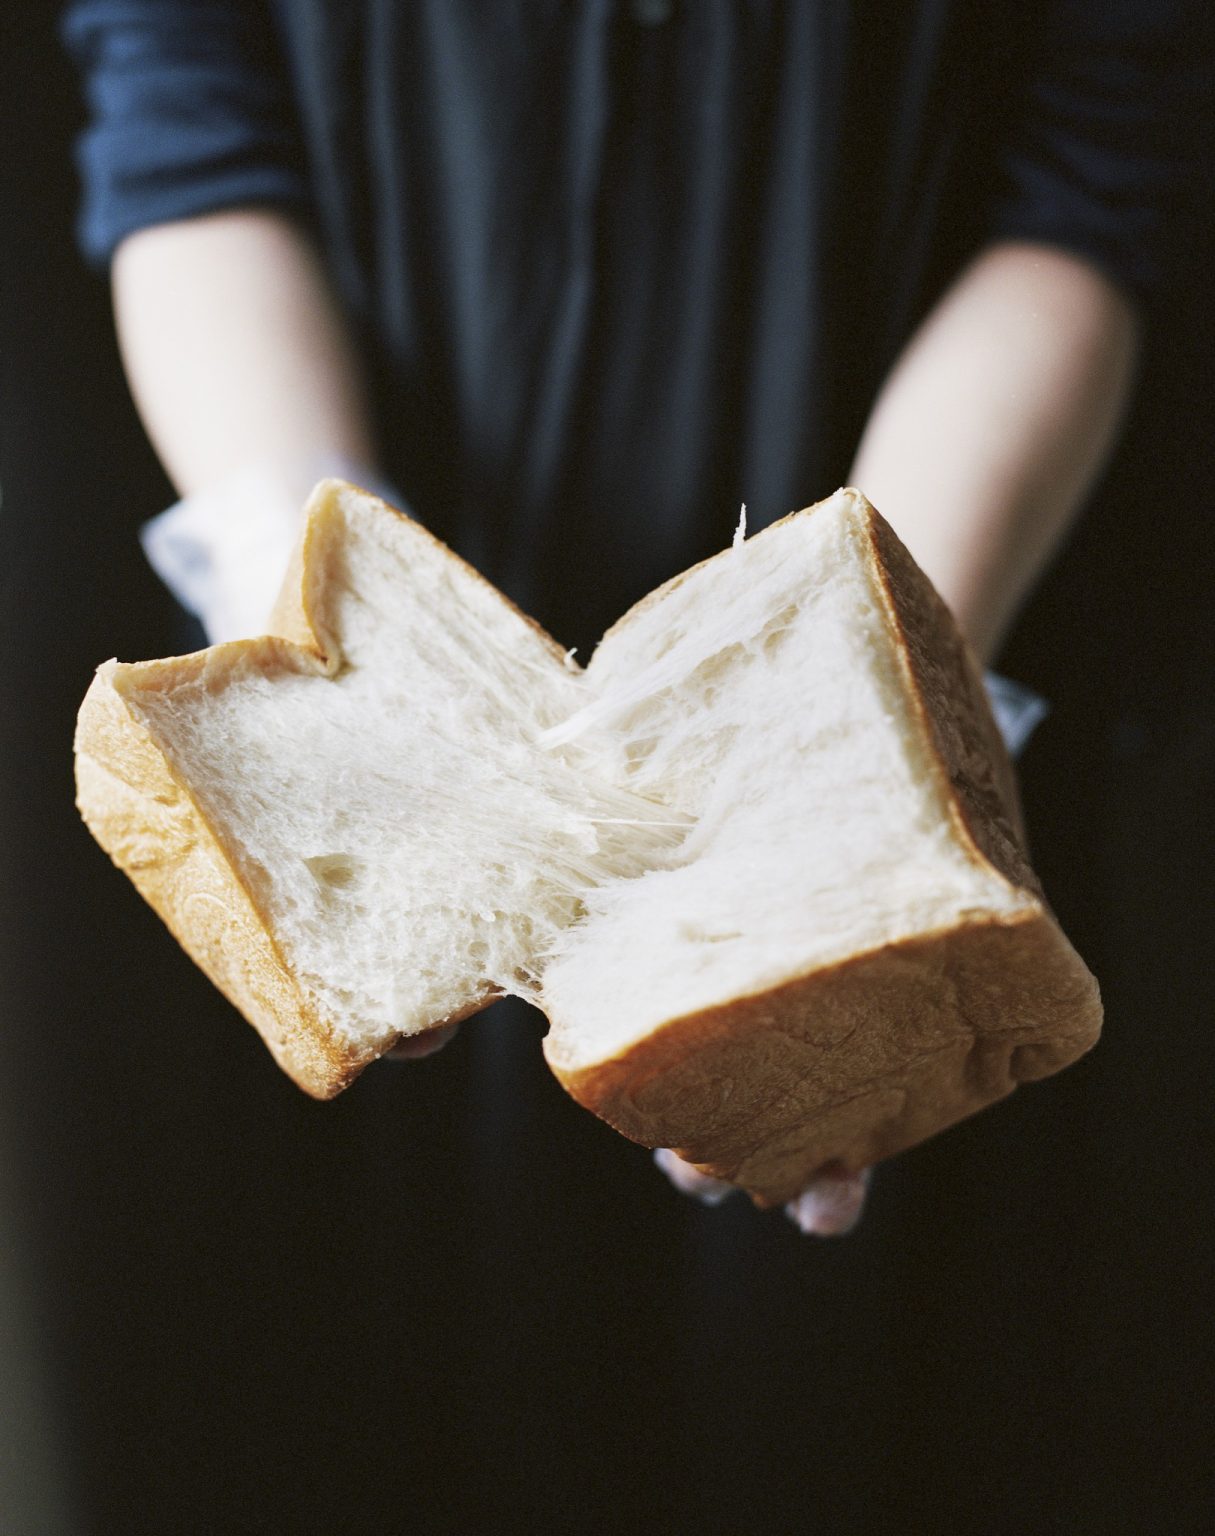 パティスリー生食パン1,000円。贅沢に材料を使った、お菓子に果てしなく近い食パン。いちばんのこだわりは、乳脂肪分47%の生クリームをたっぷりと使用すること。